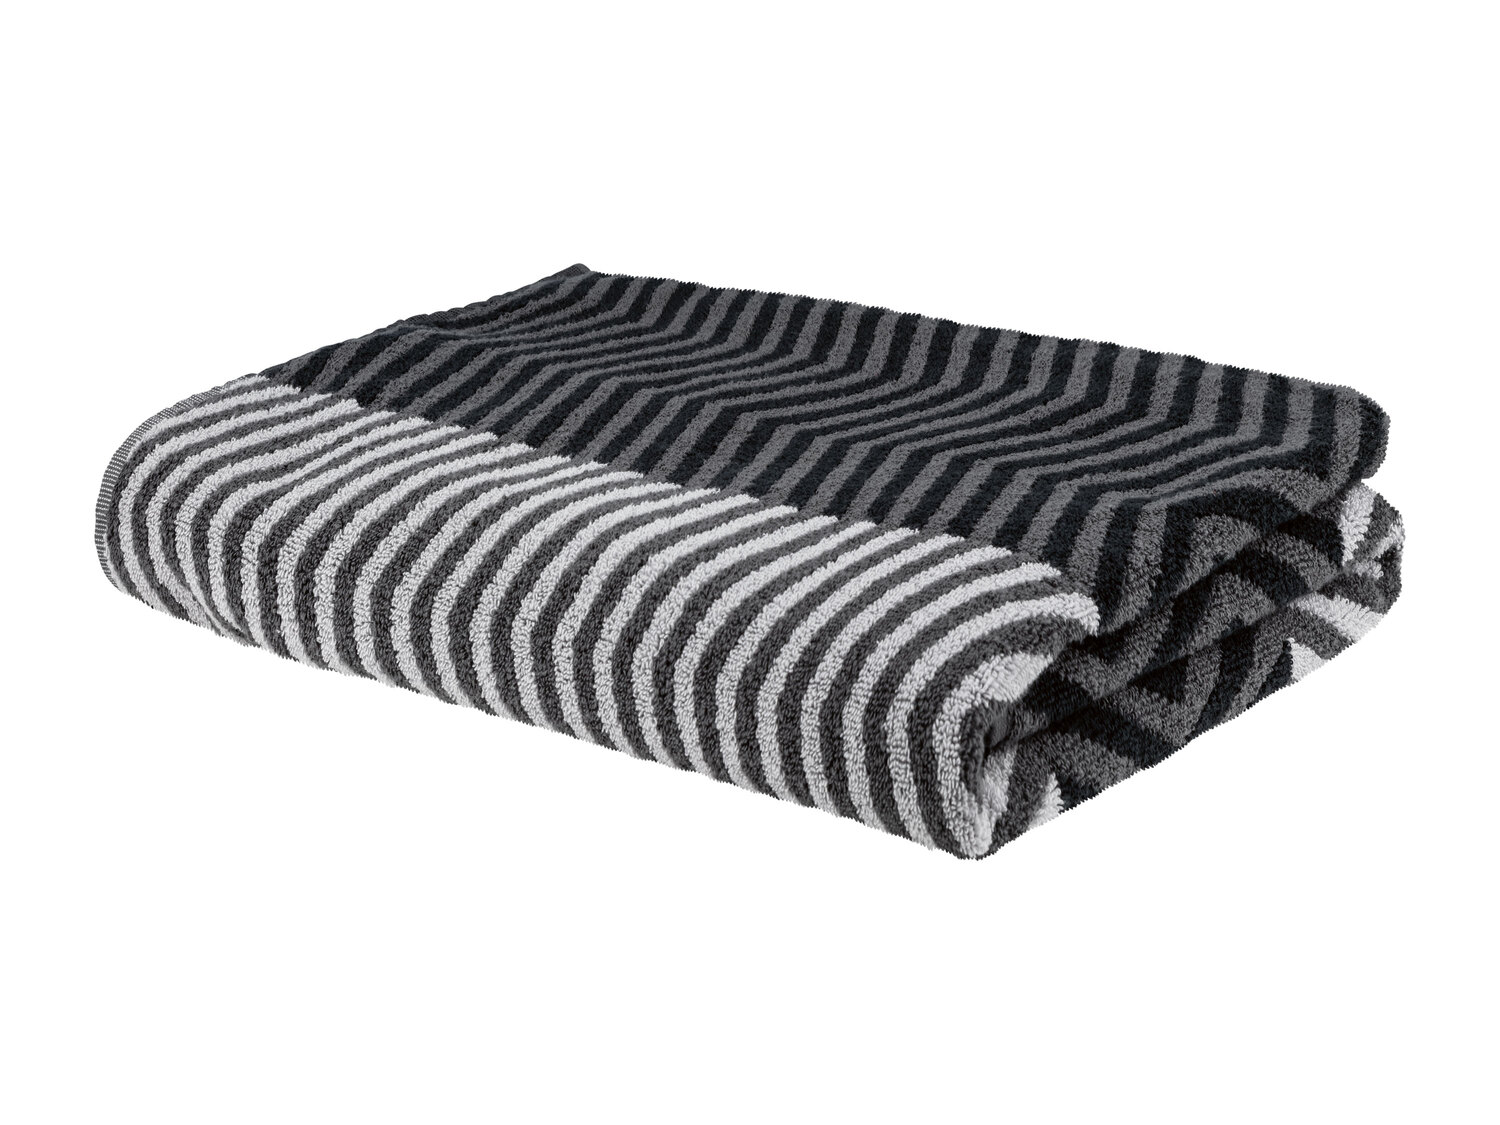 Ręcznik 100 x 150 cm Miomare, cena 34,99 PLN 
- 500 g/m2
- 100% bawełny
- miękkie ...